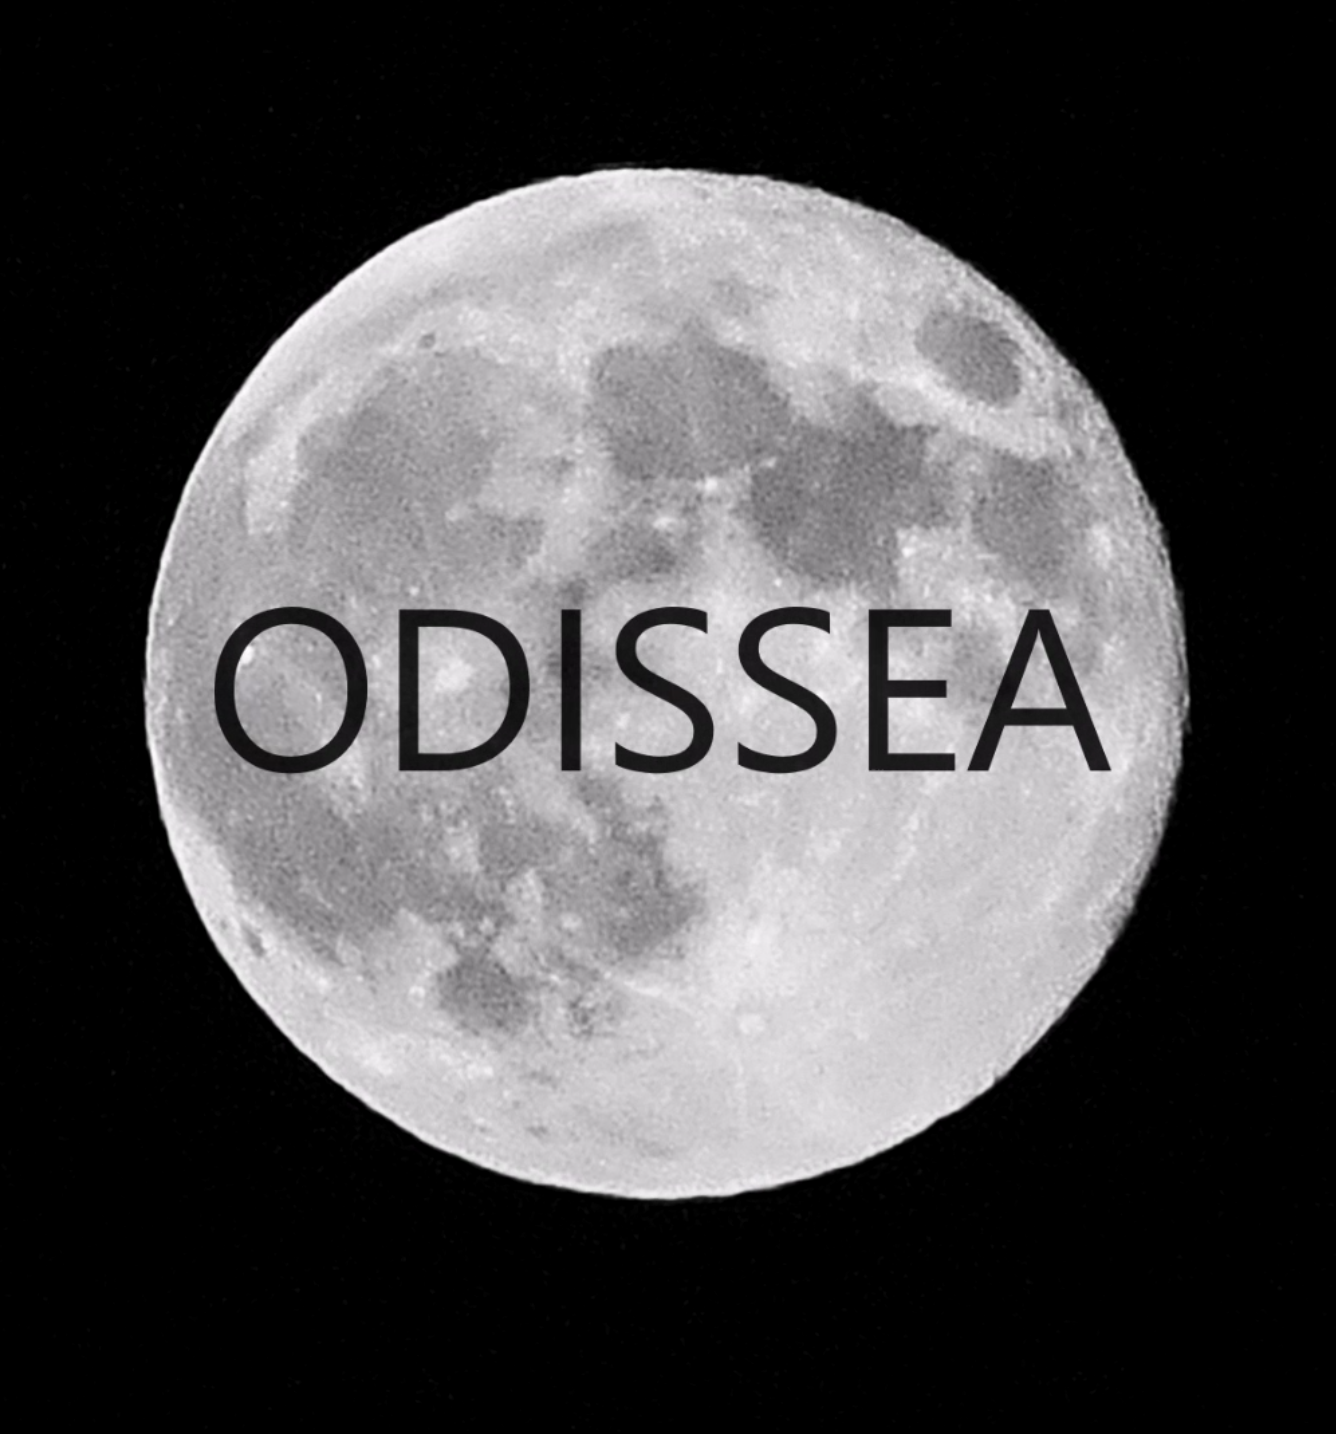 odissea - blue moon trilogy